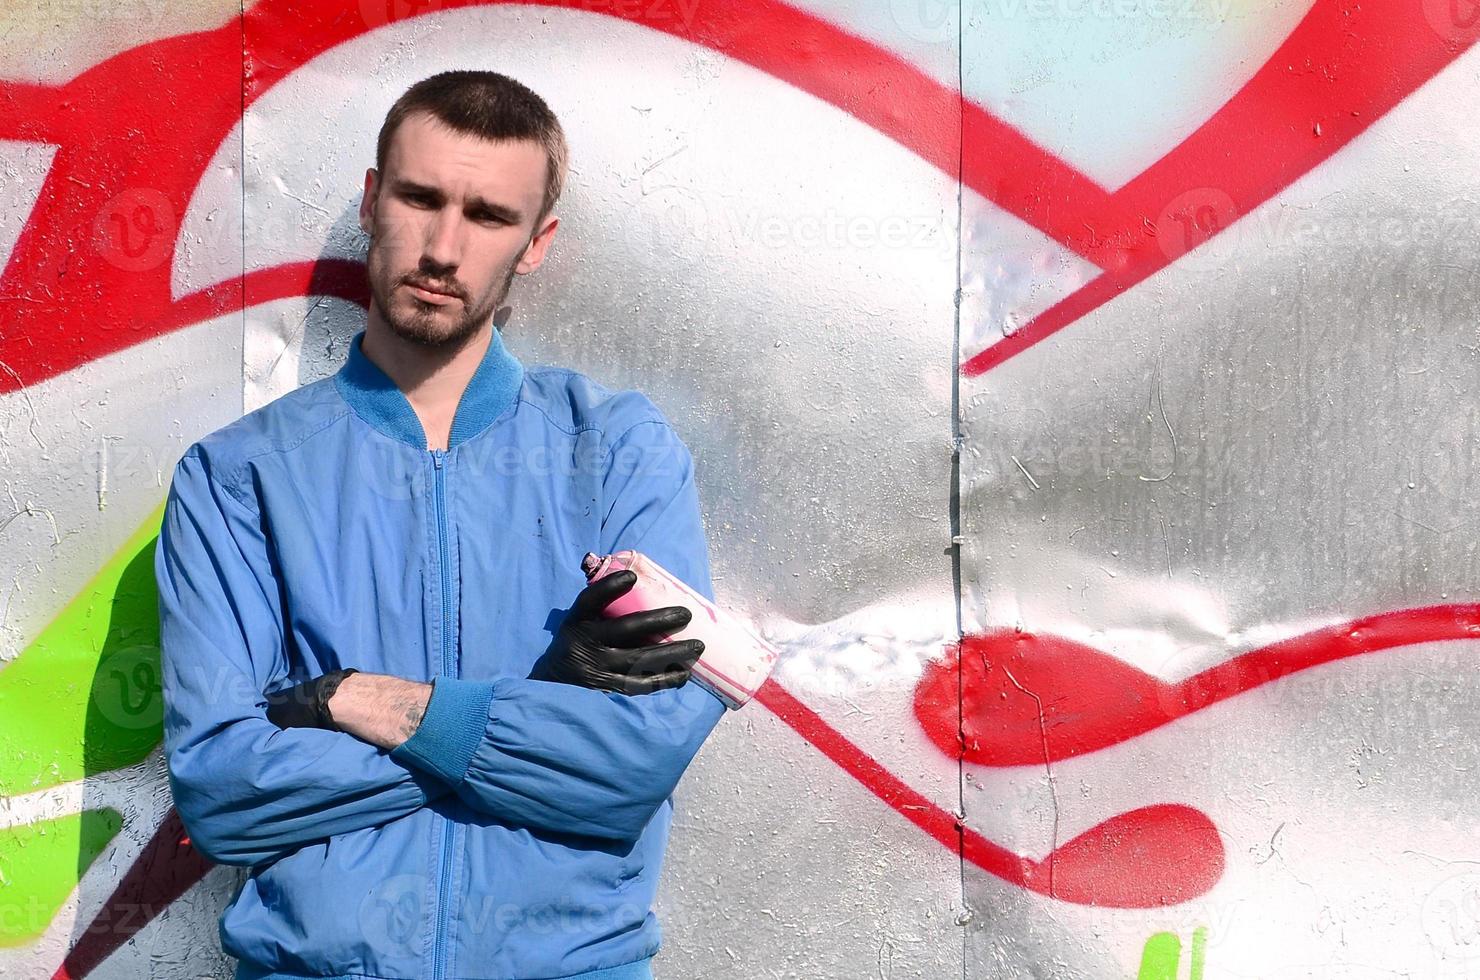 de graffiti konstnär med spray kan poser mot de bakgrund av en färgrik målad vägg. gata konst begrepp foto